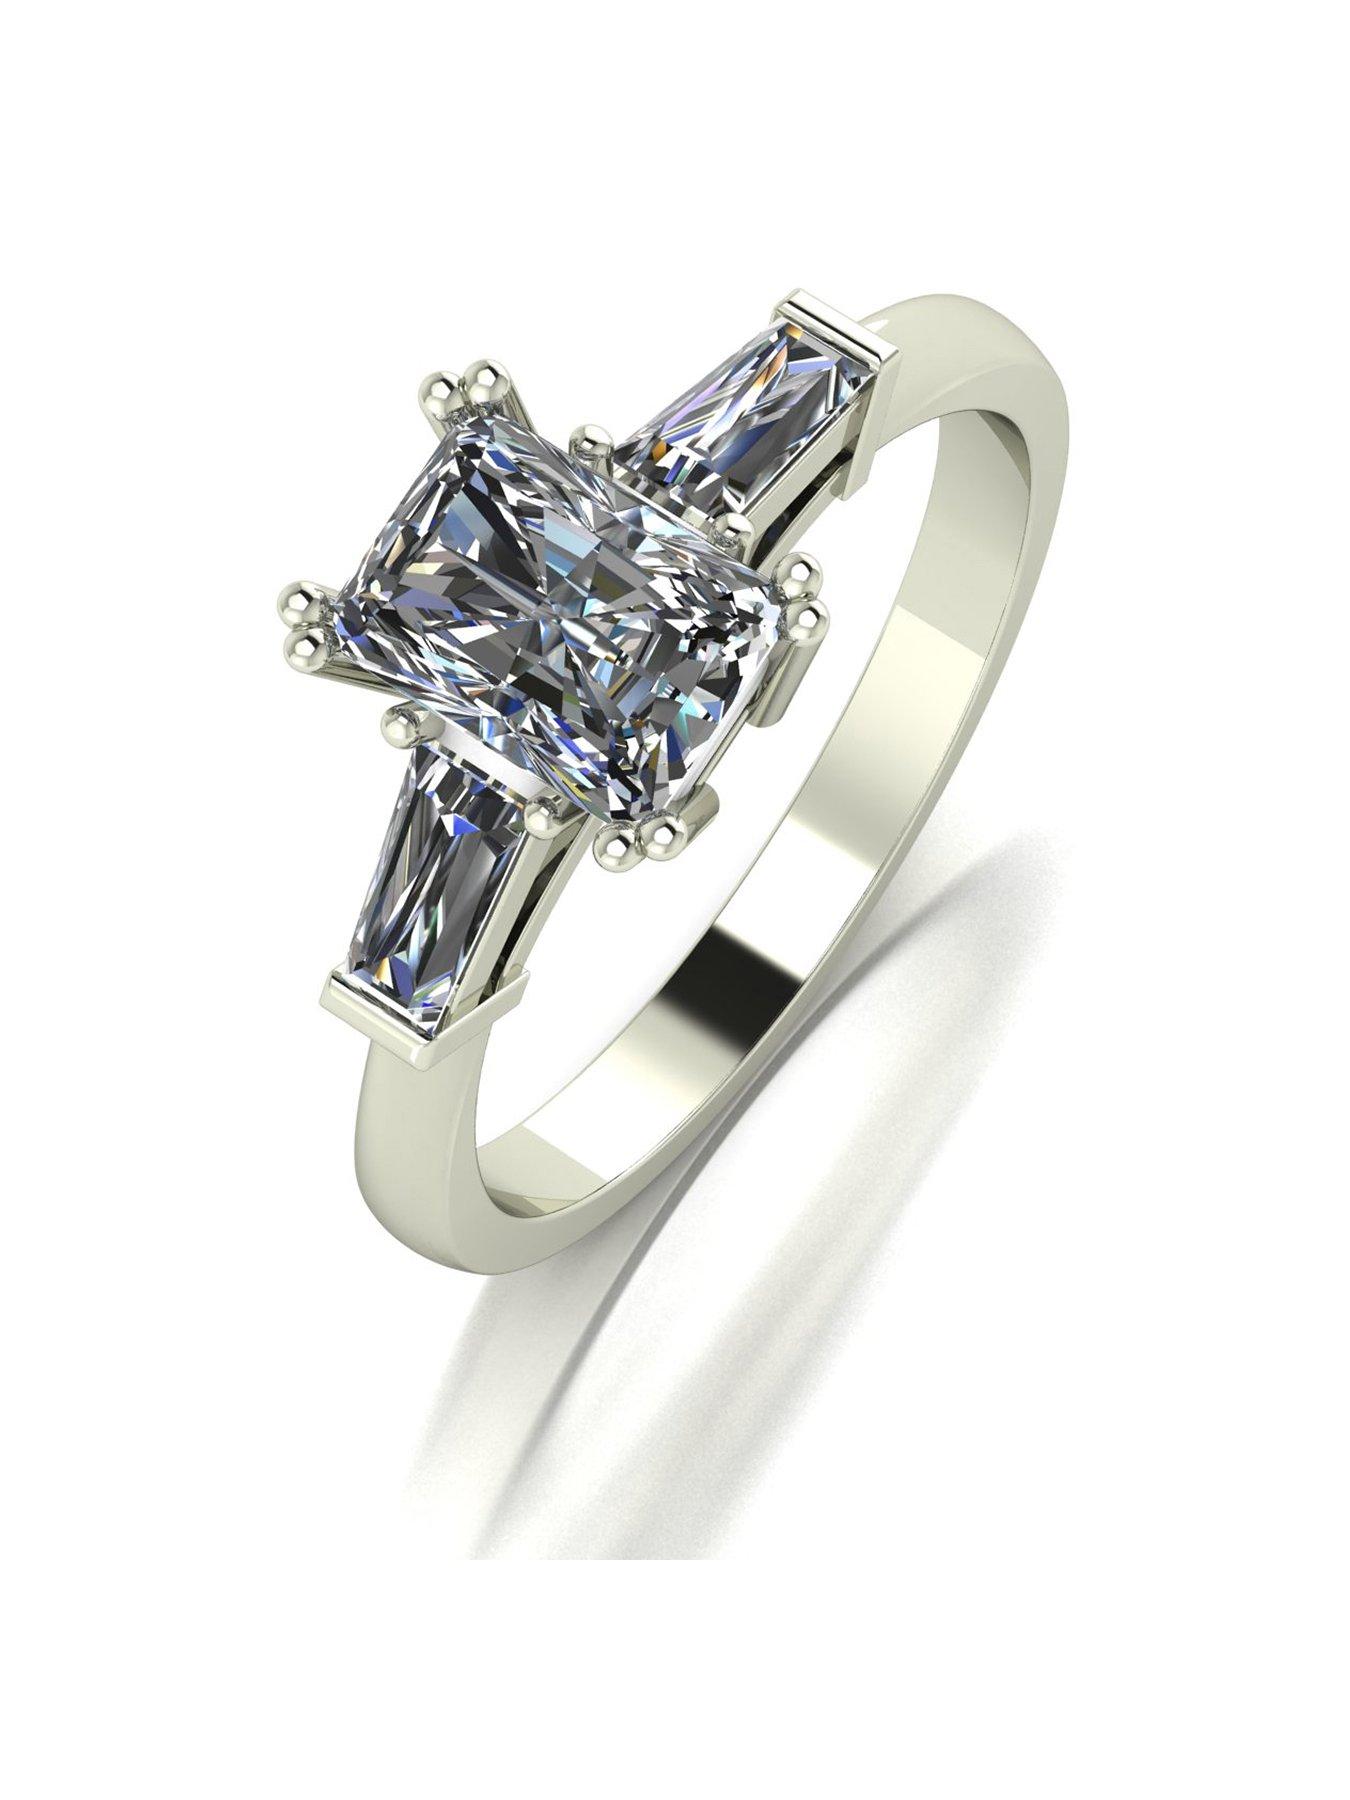 Rings | Diamond, Eternity, Wedding Rings & More | Very.co.uk